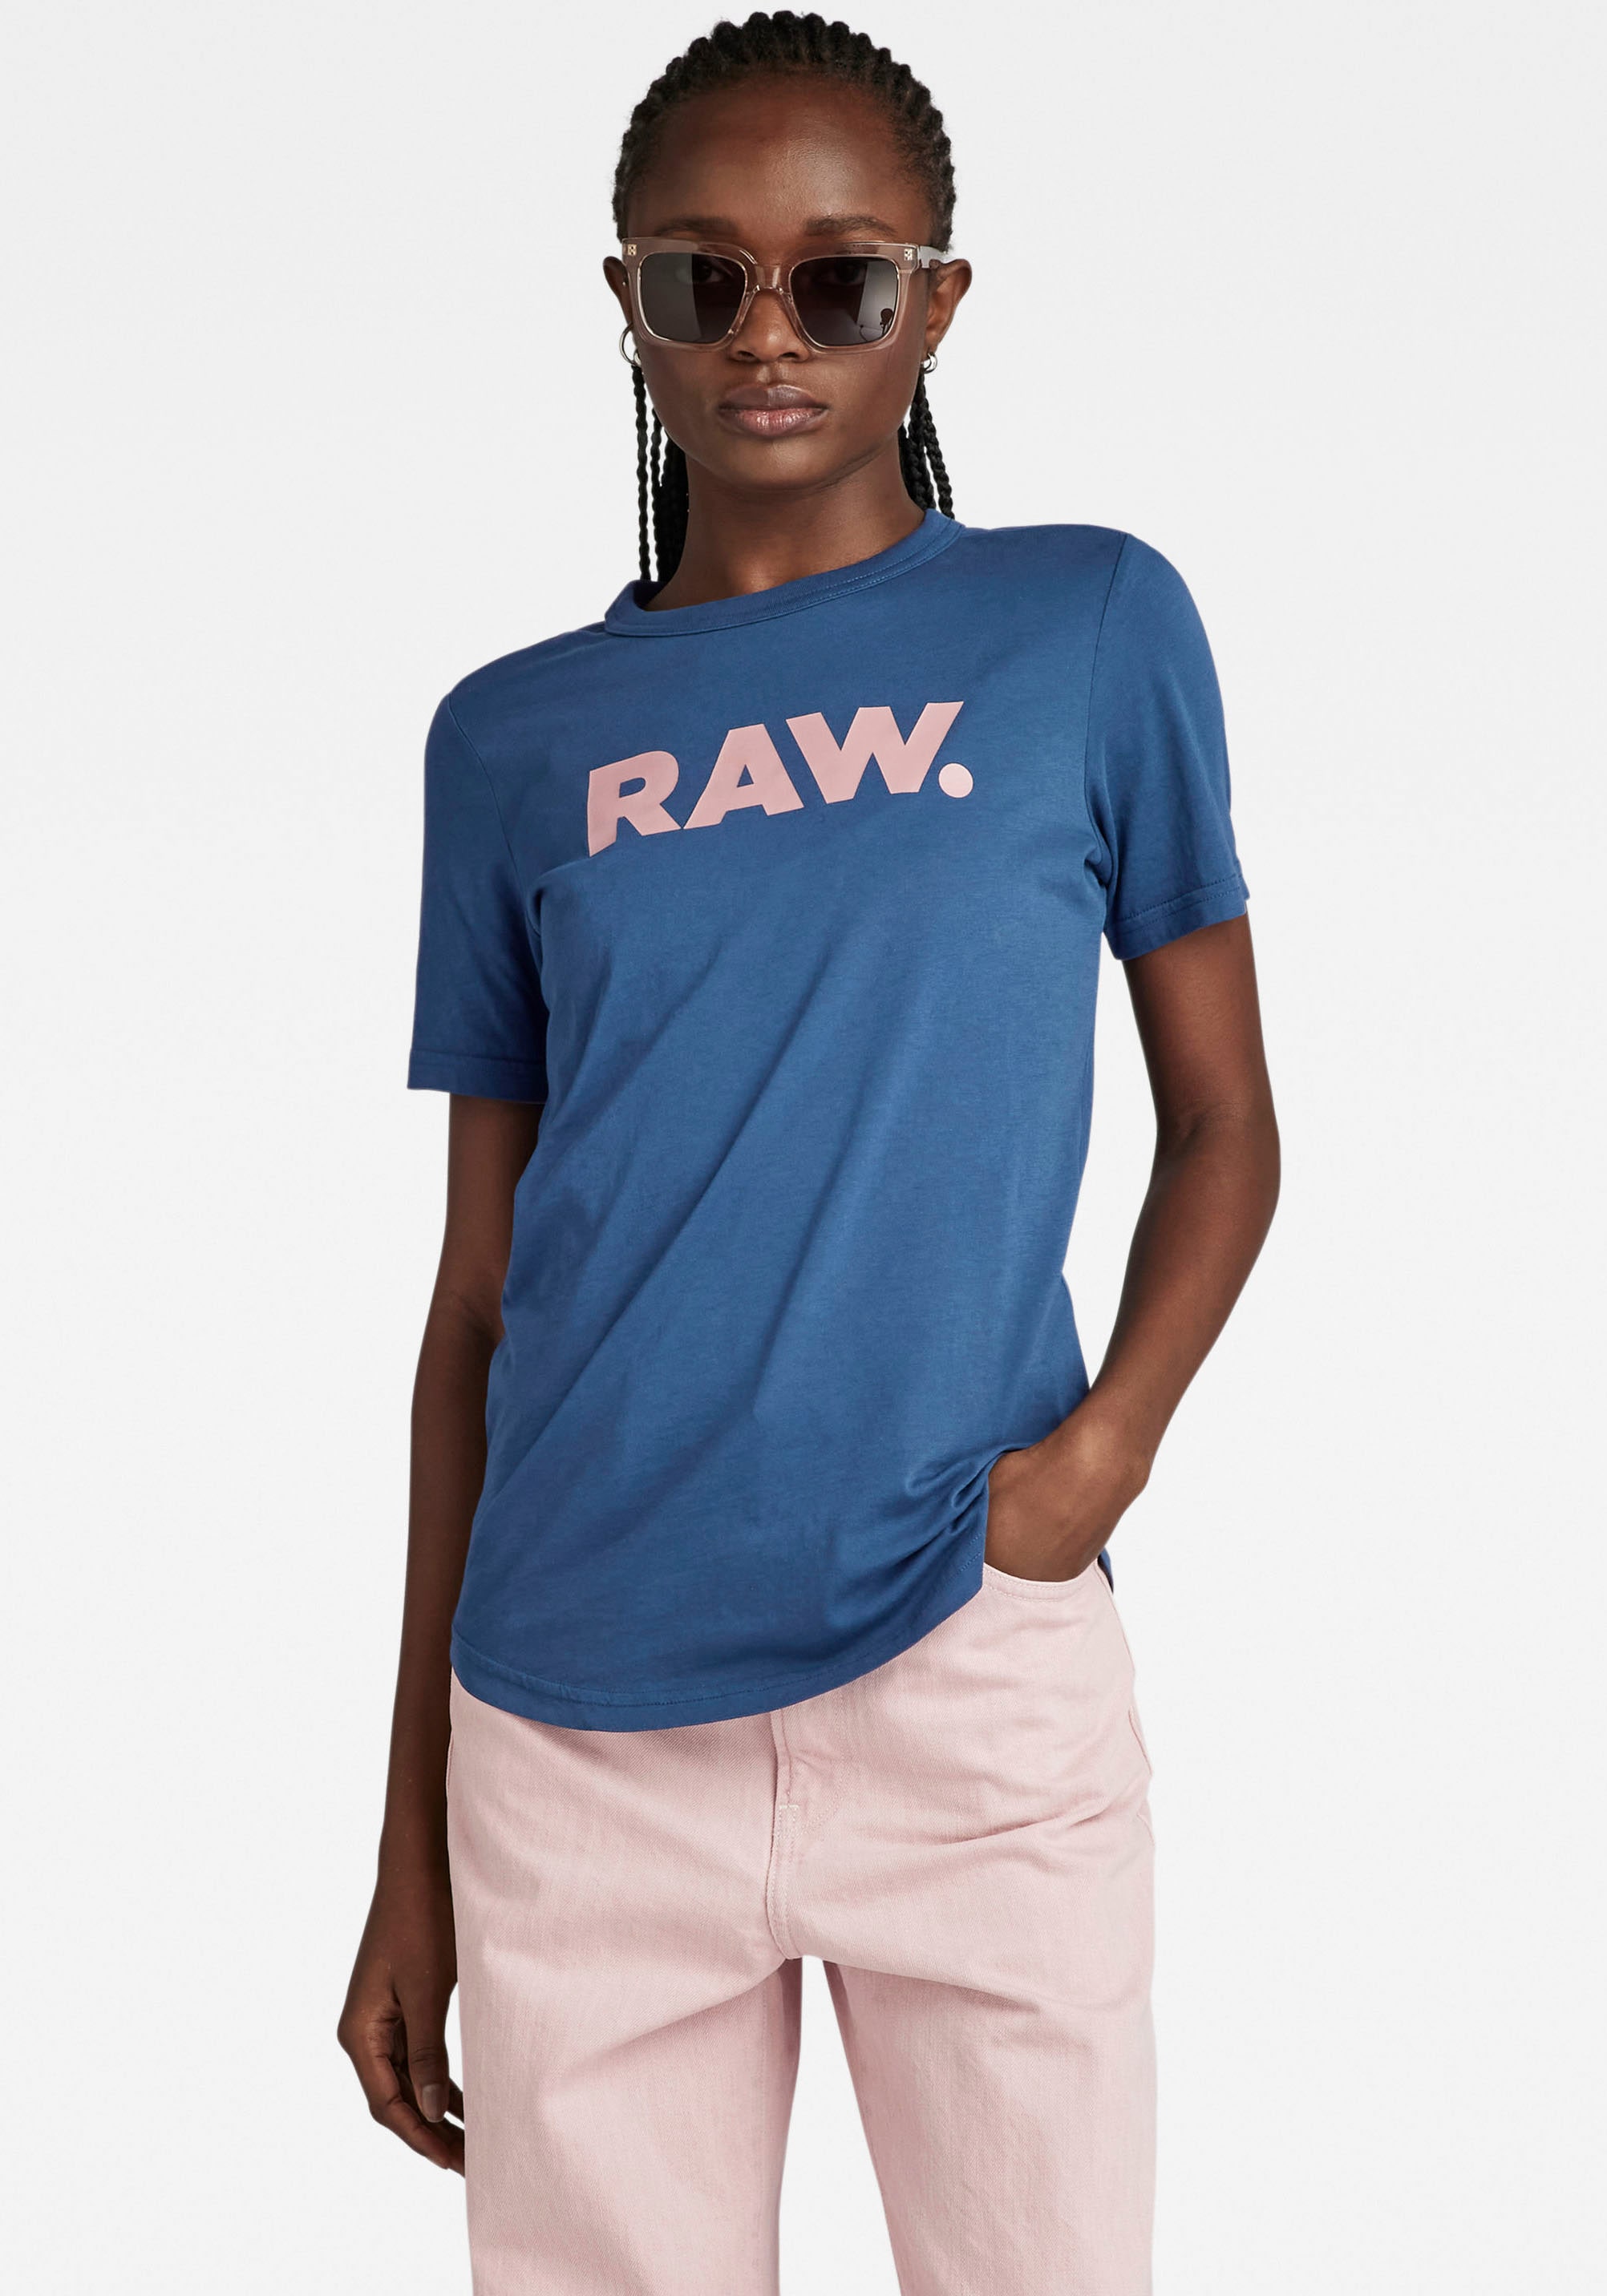 | I\'m G-Star »RAW. slim t wmn« online walking T-Shirt RAW r